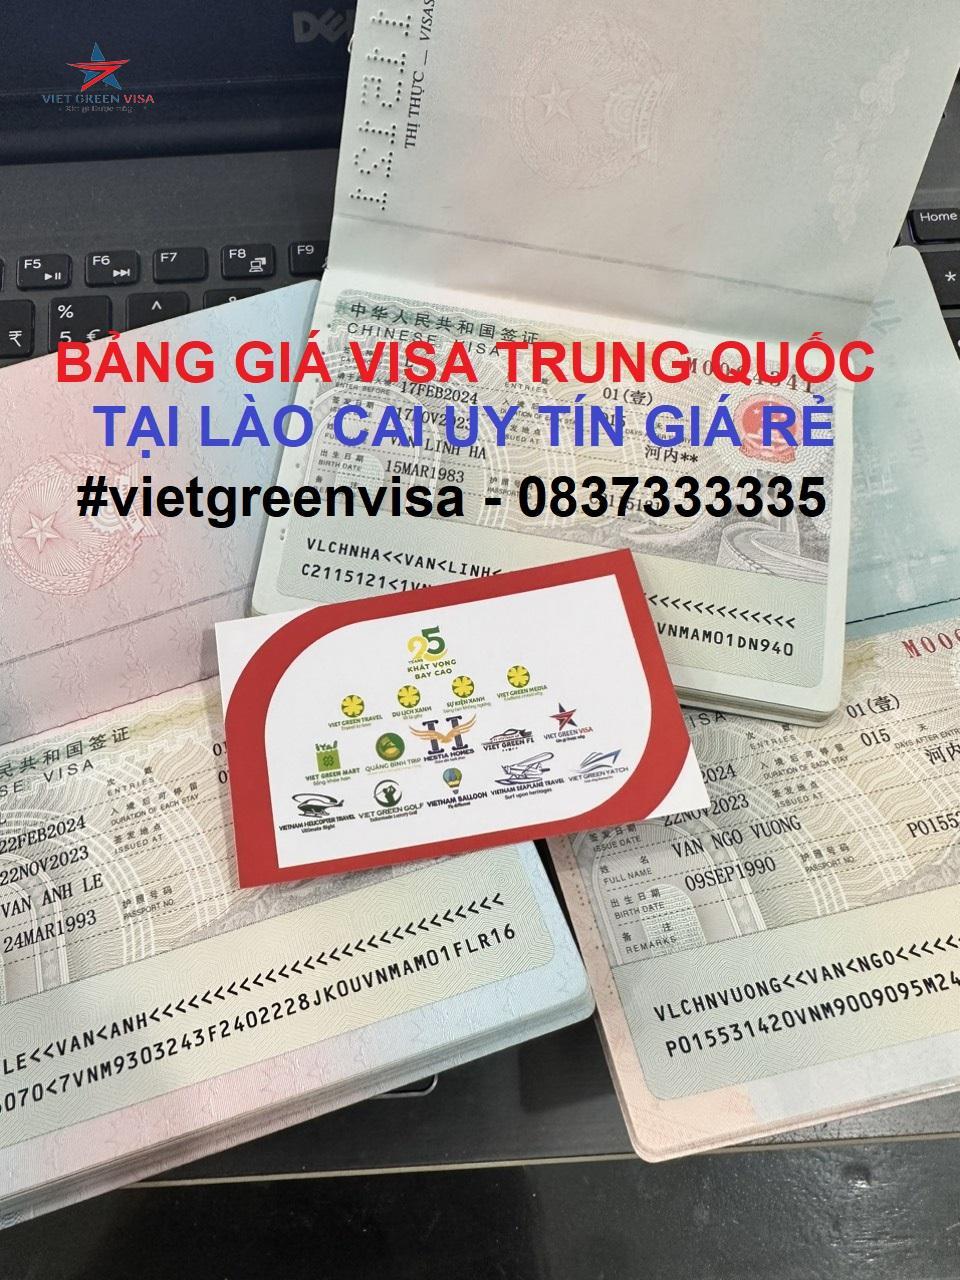 Dịch vụ xin visa Trung Quốc tại Lào Cai uy tín